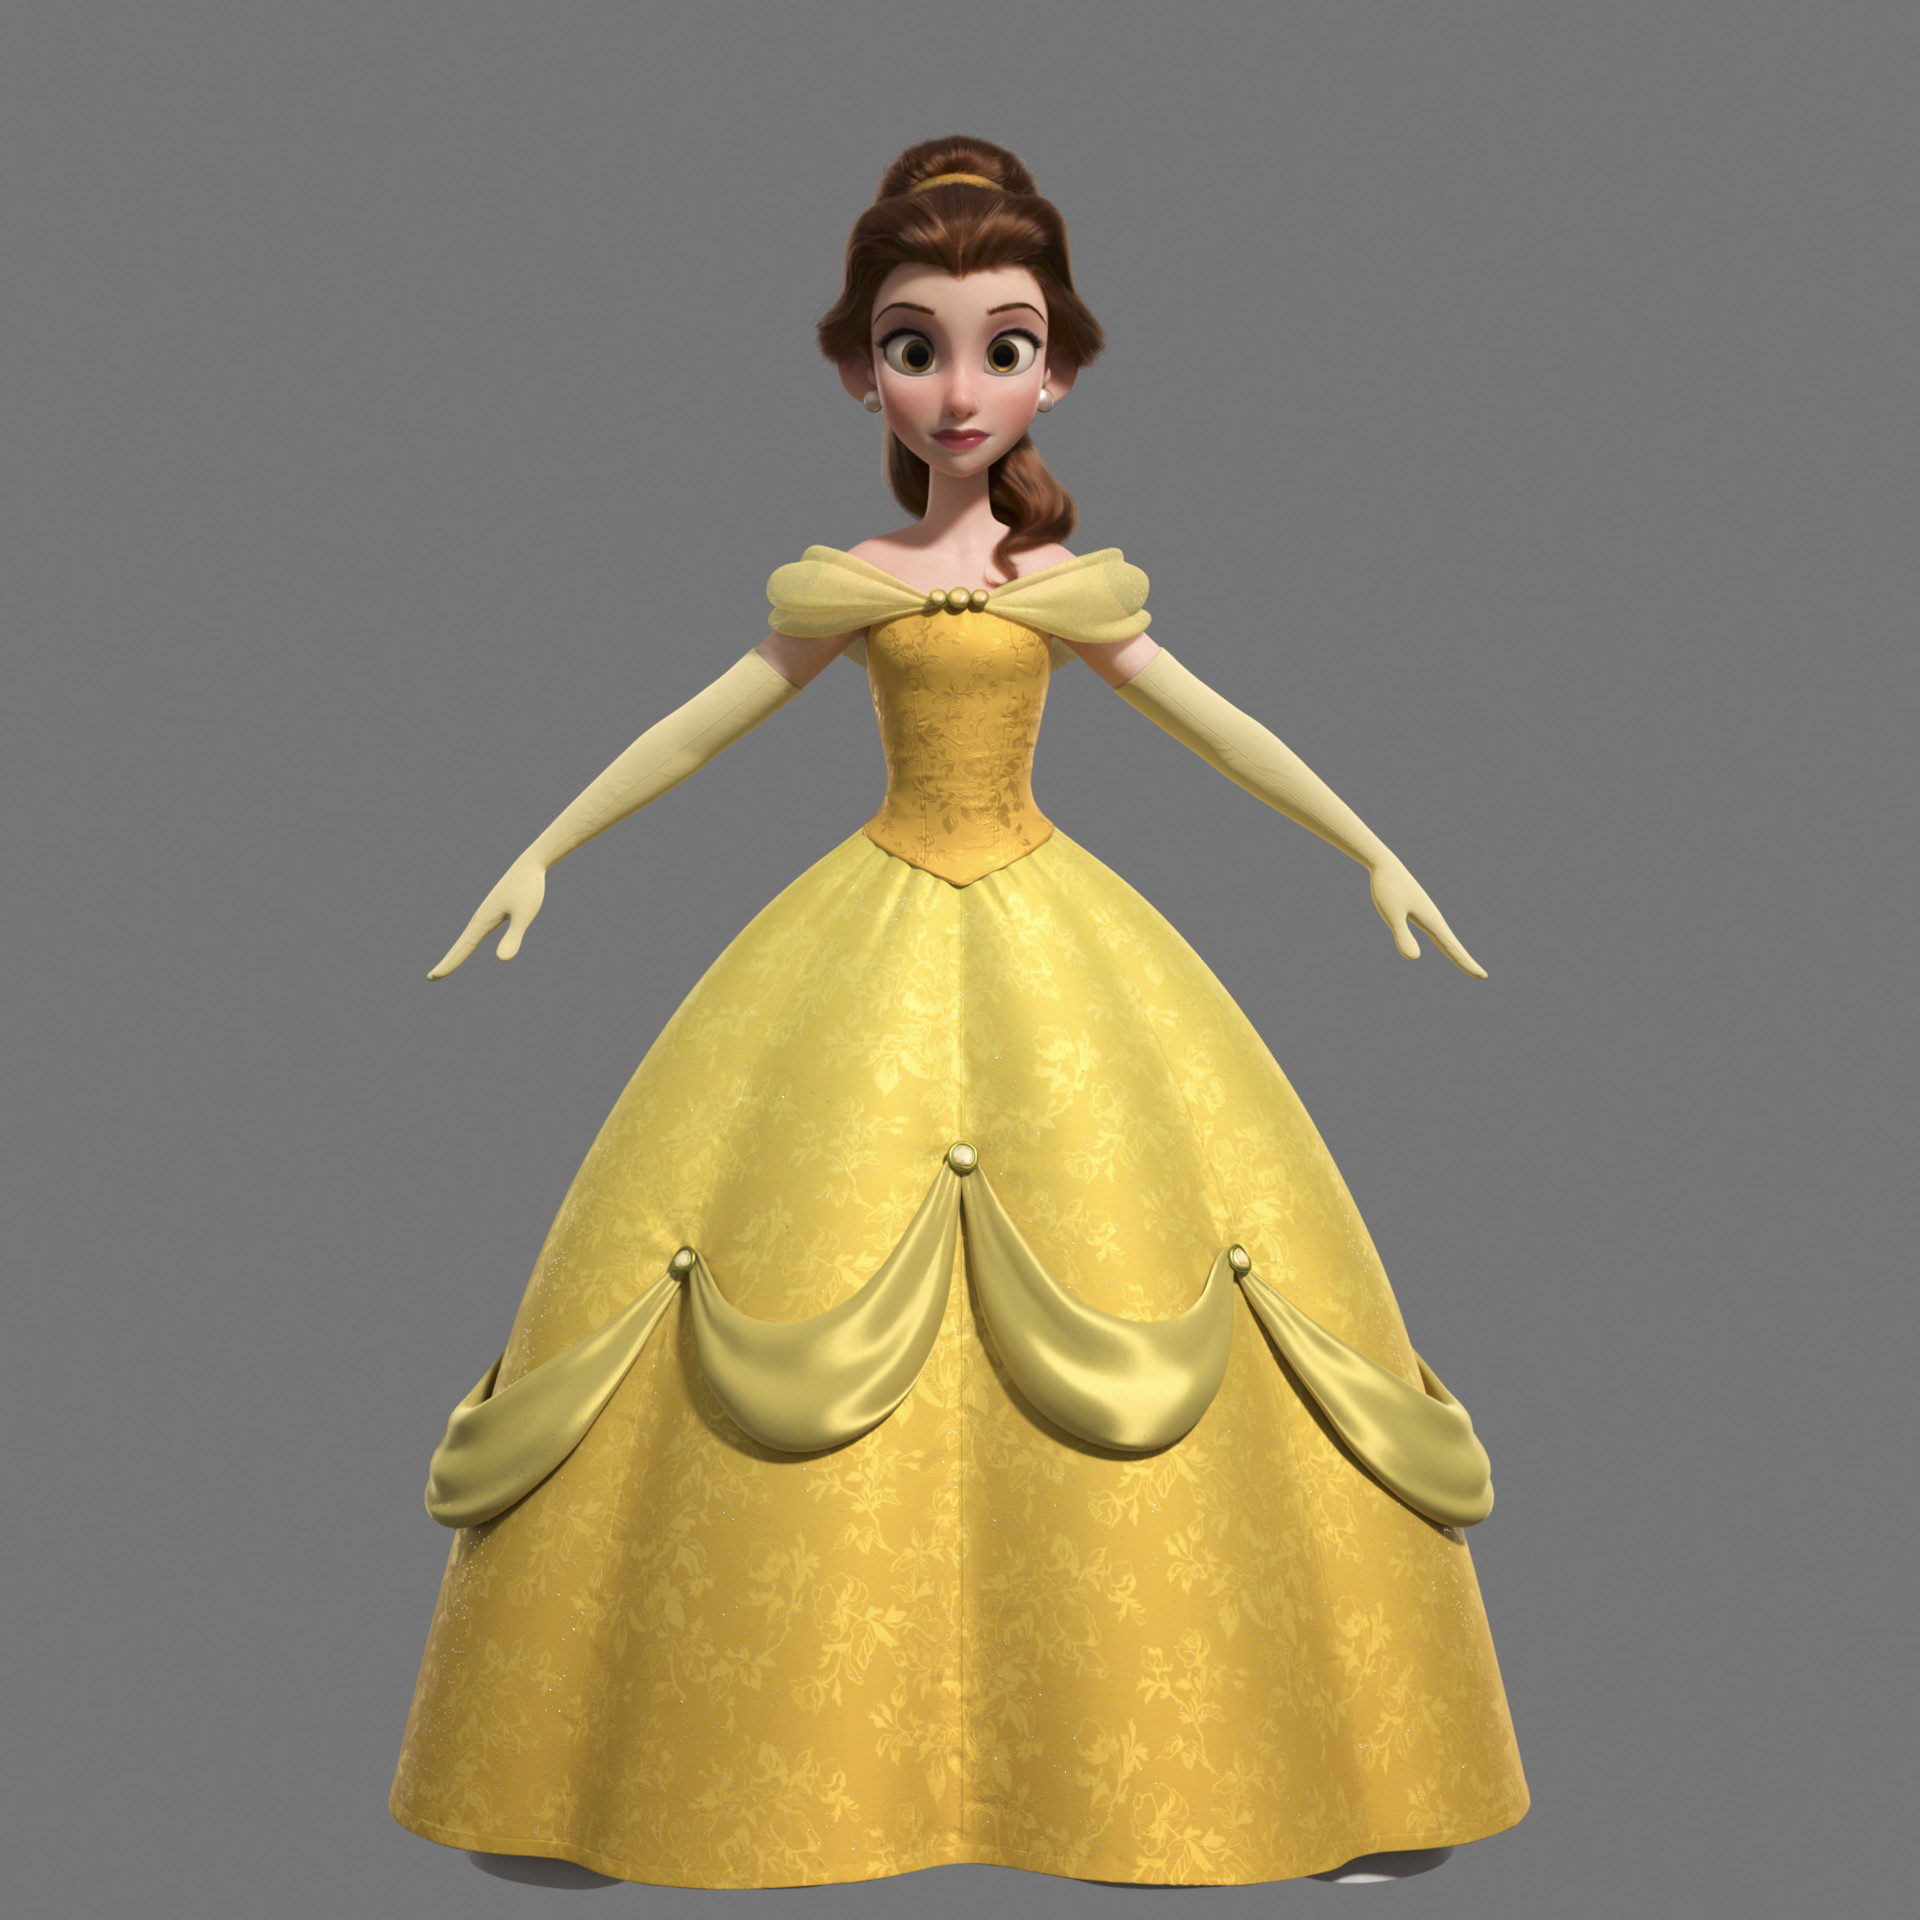 Les Princesses Disney "Version Ralph 2.0" : Vos préférées ? Jay-jackson-1-1